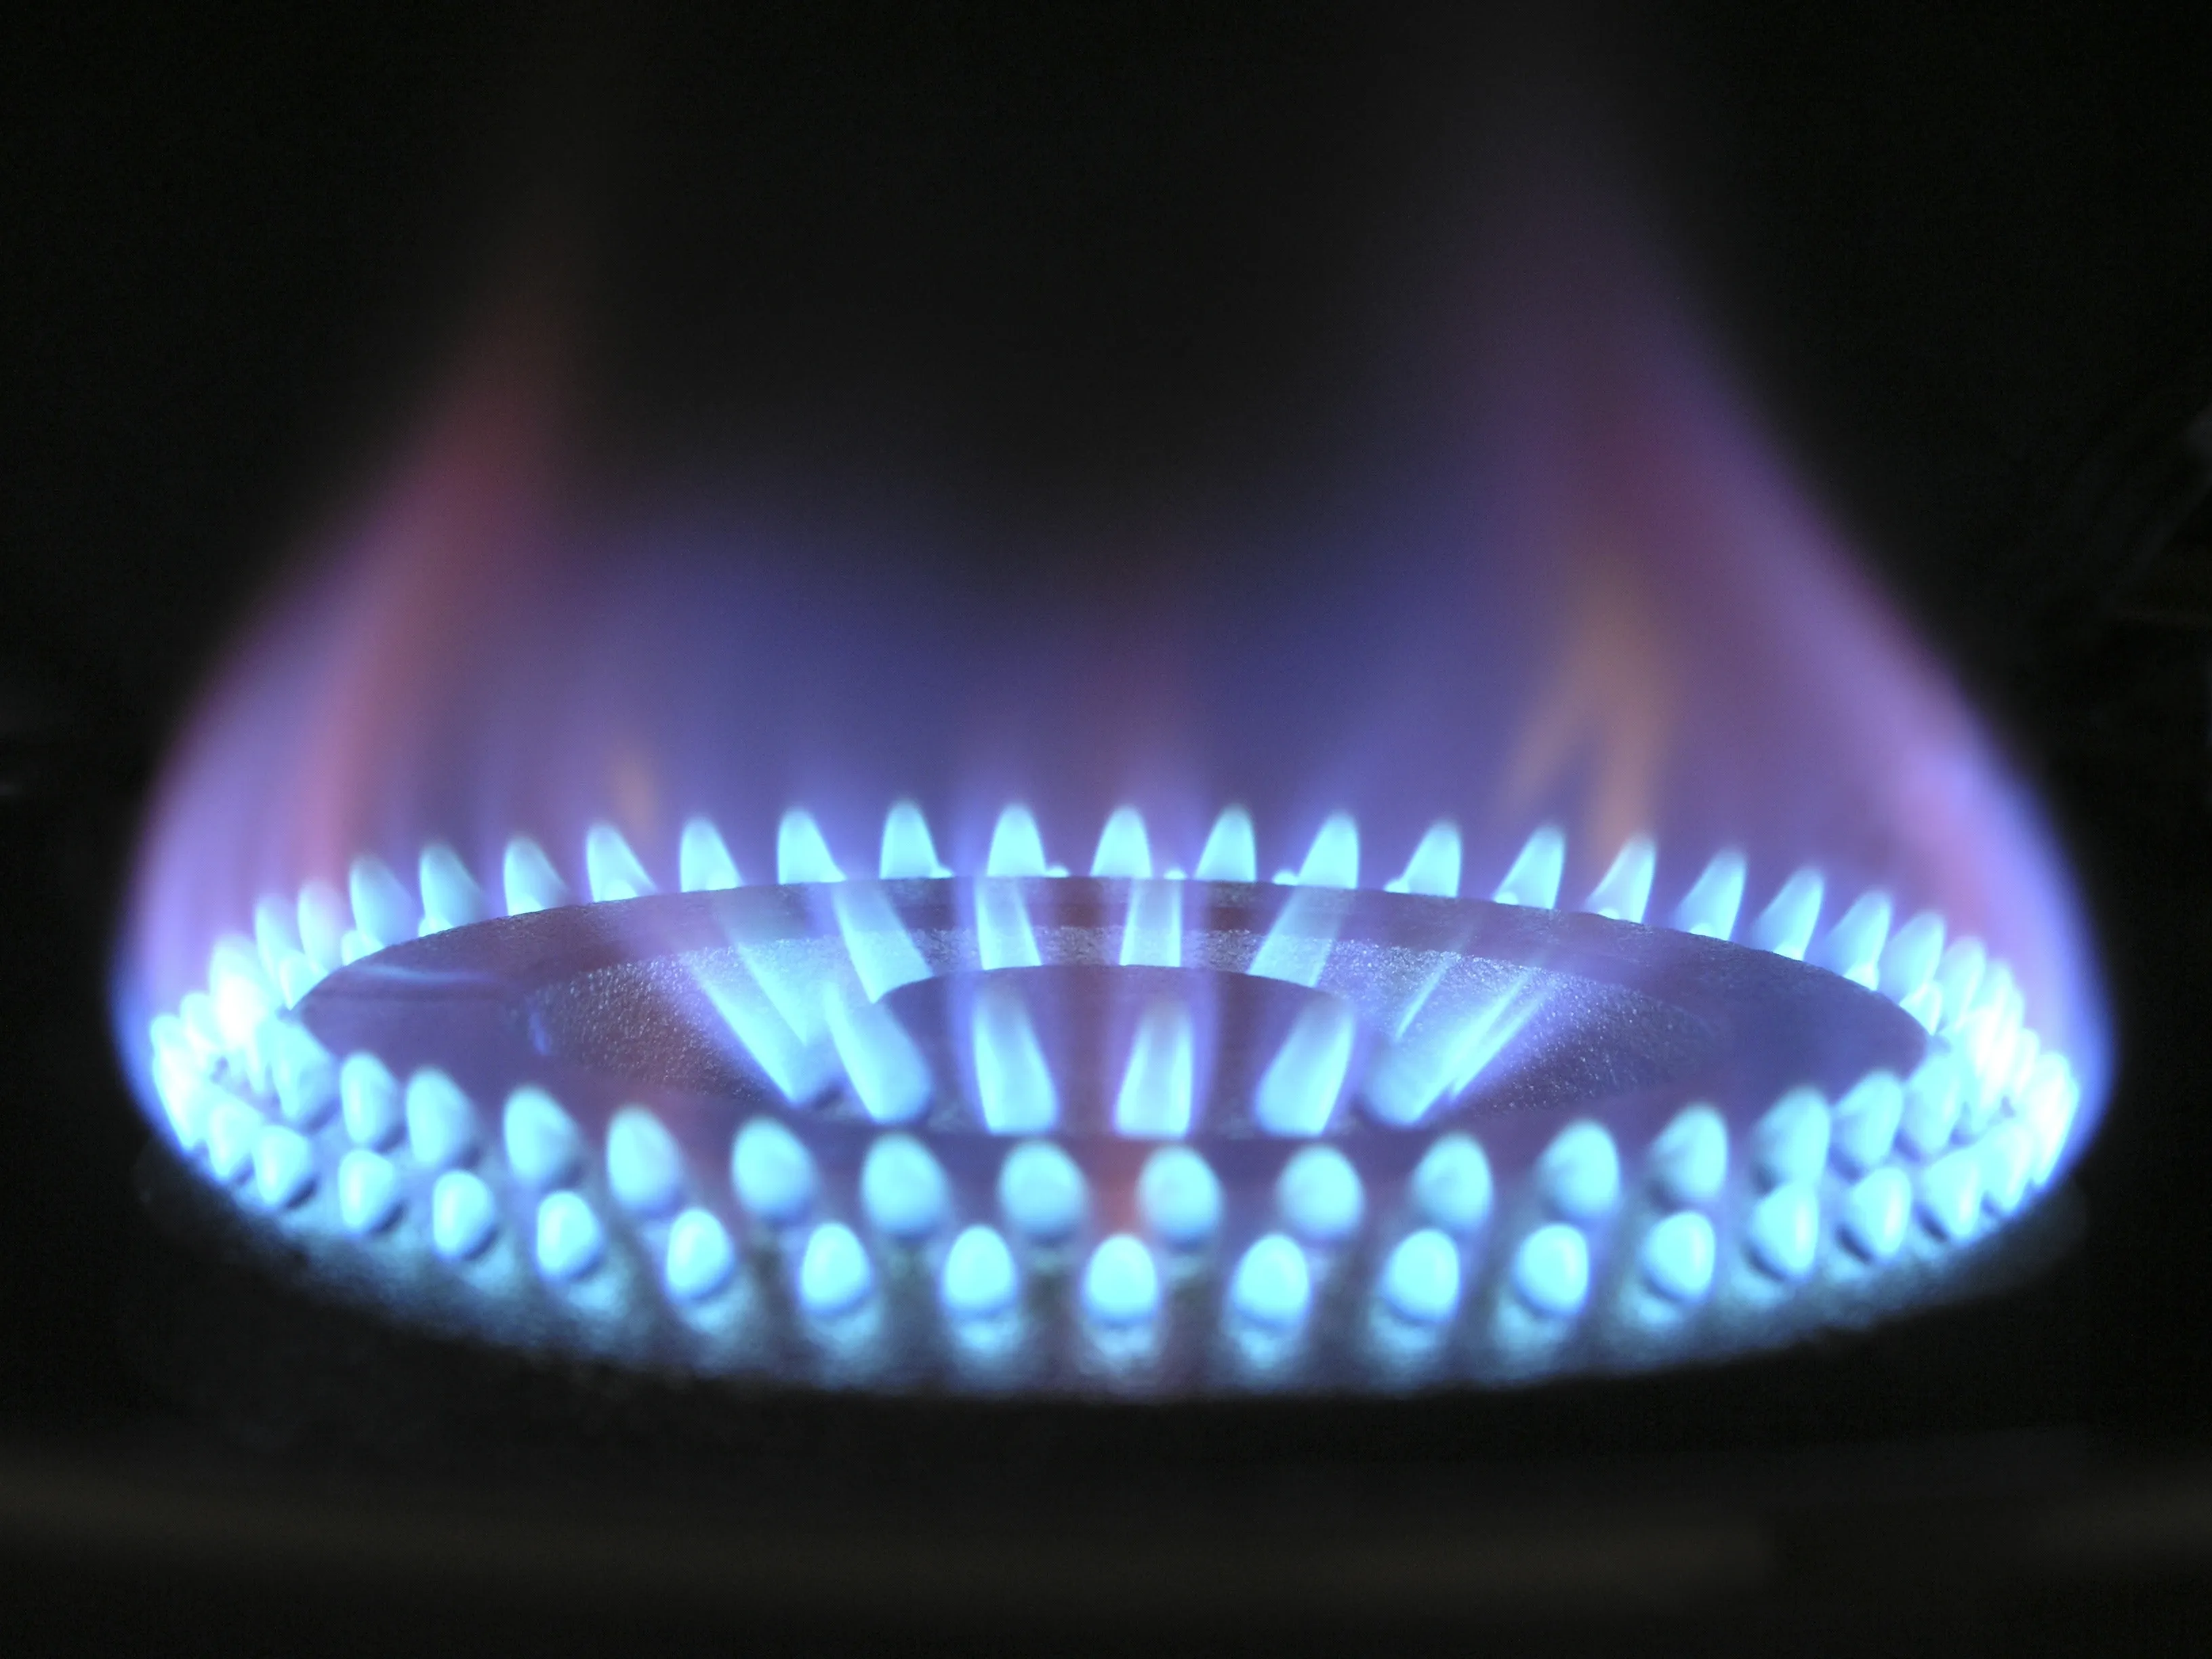 Quantidades preocupantes de benzeno são liberados pelo fogão a gás